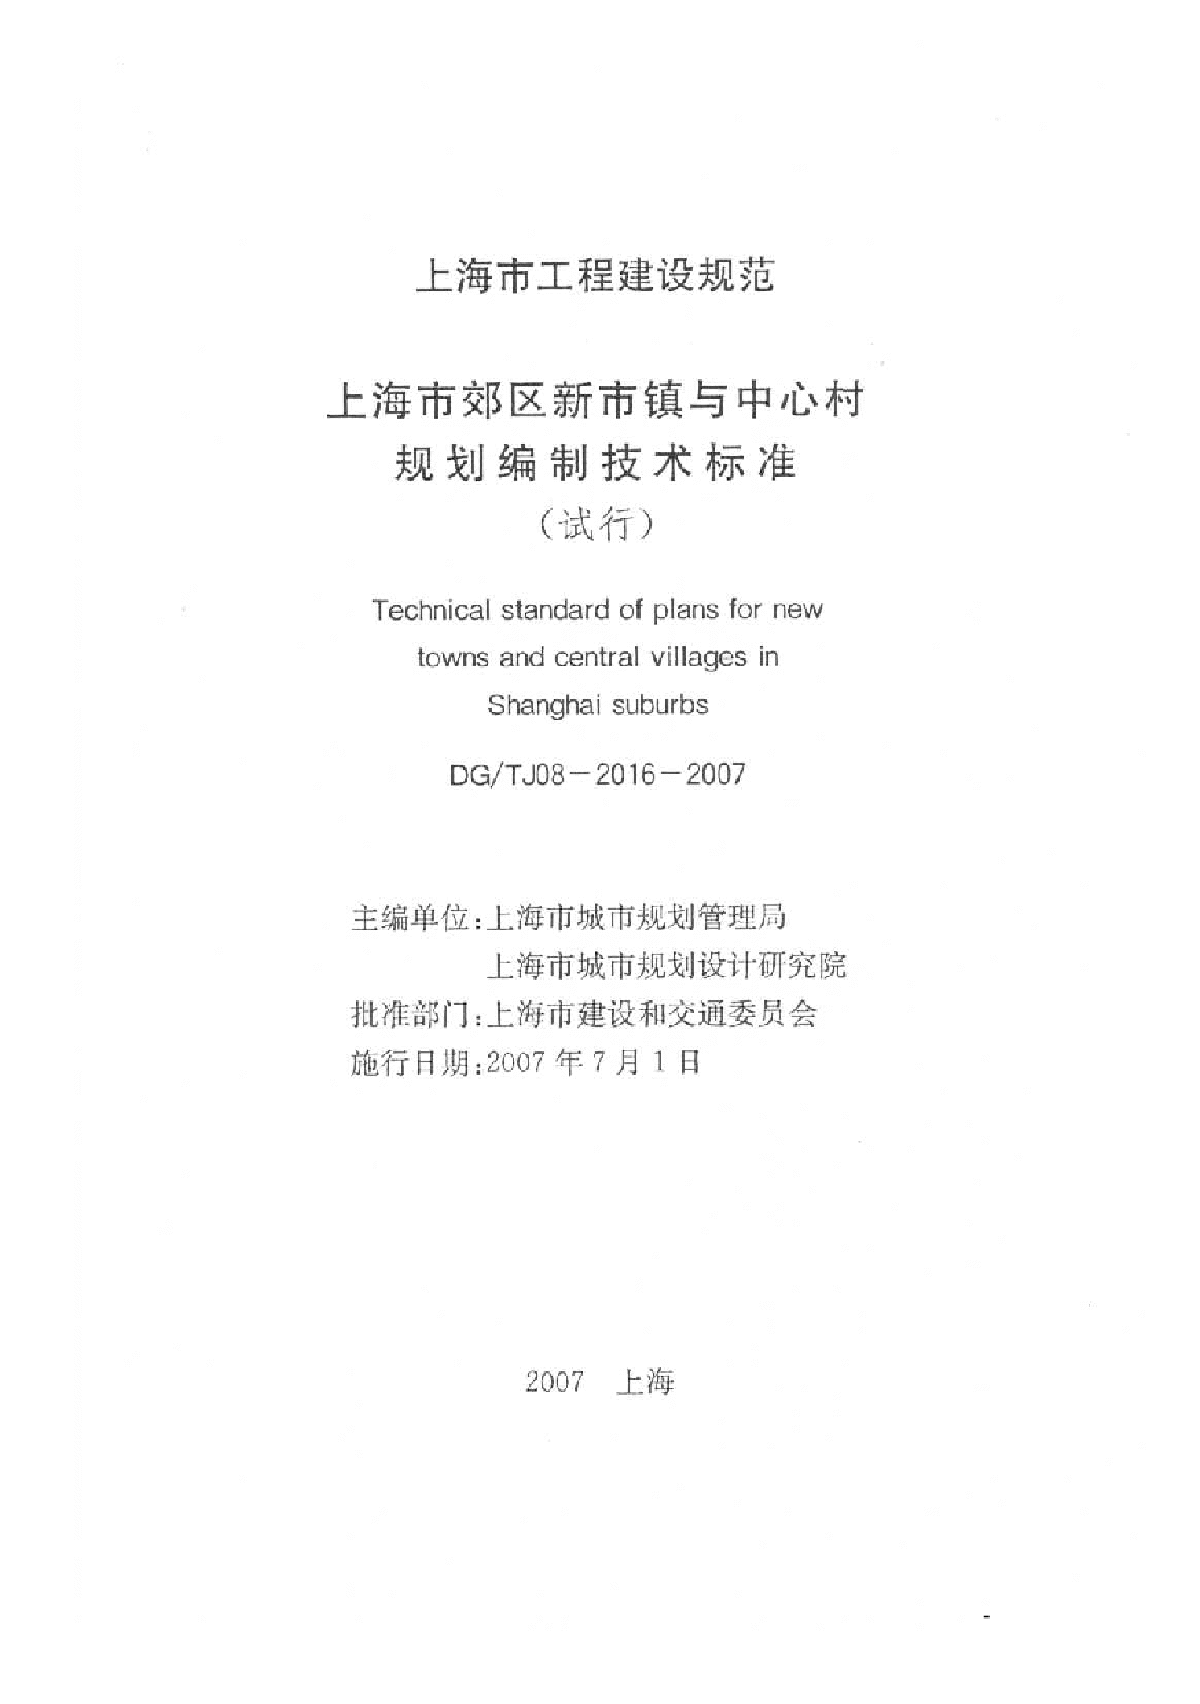 DGTJ08-2016-2007上海市郊区新市镇与中心村规划编制技术标准(试行)-图一